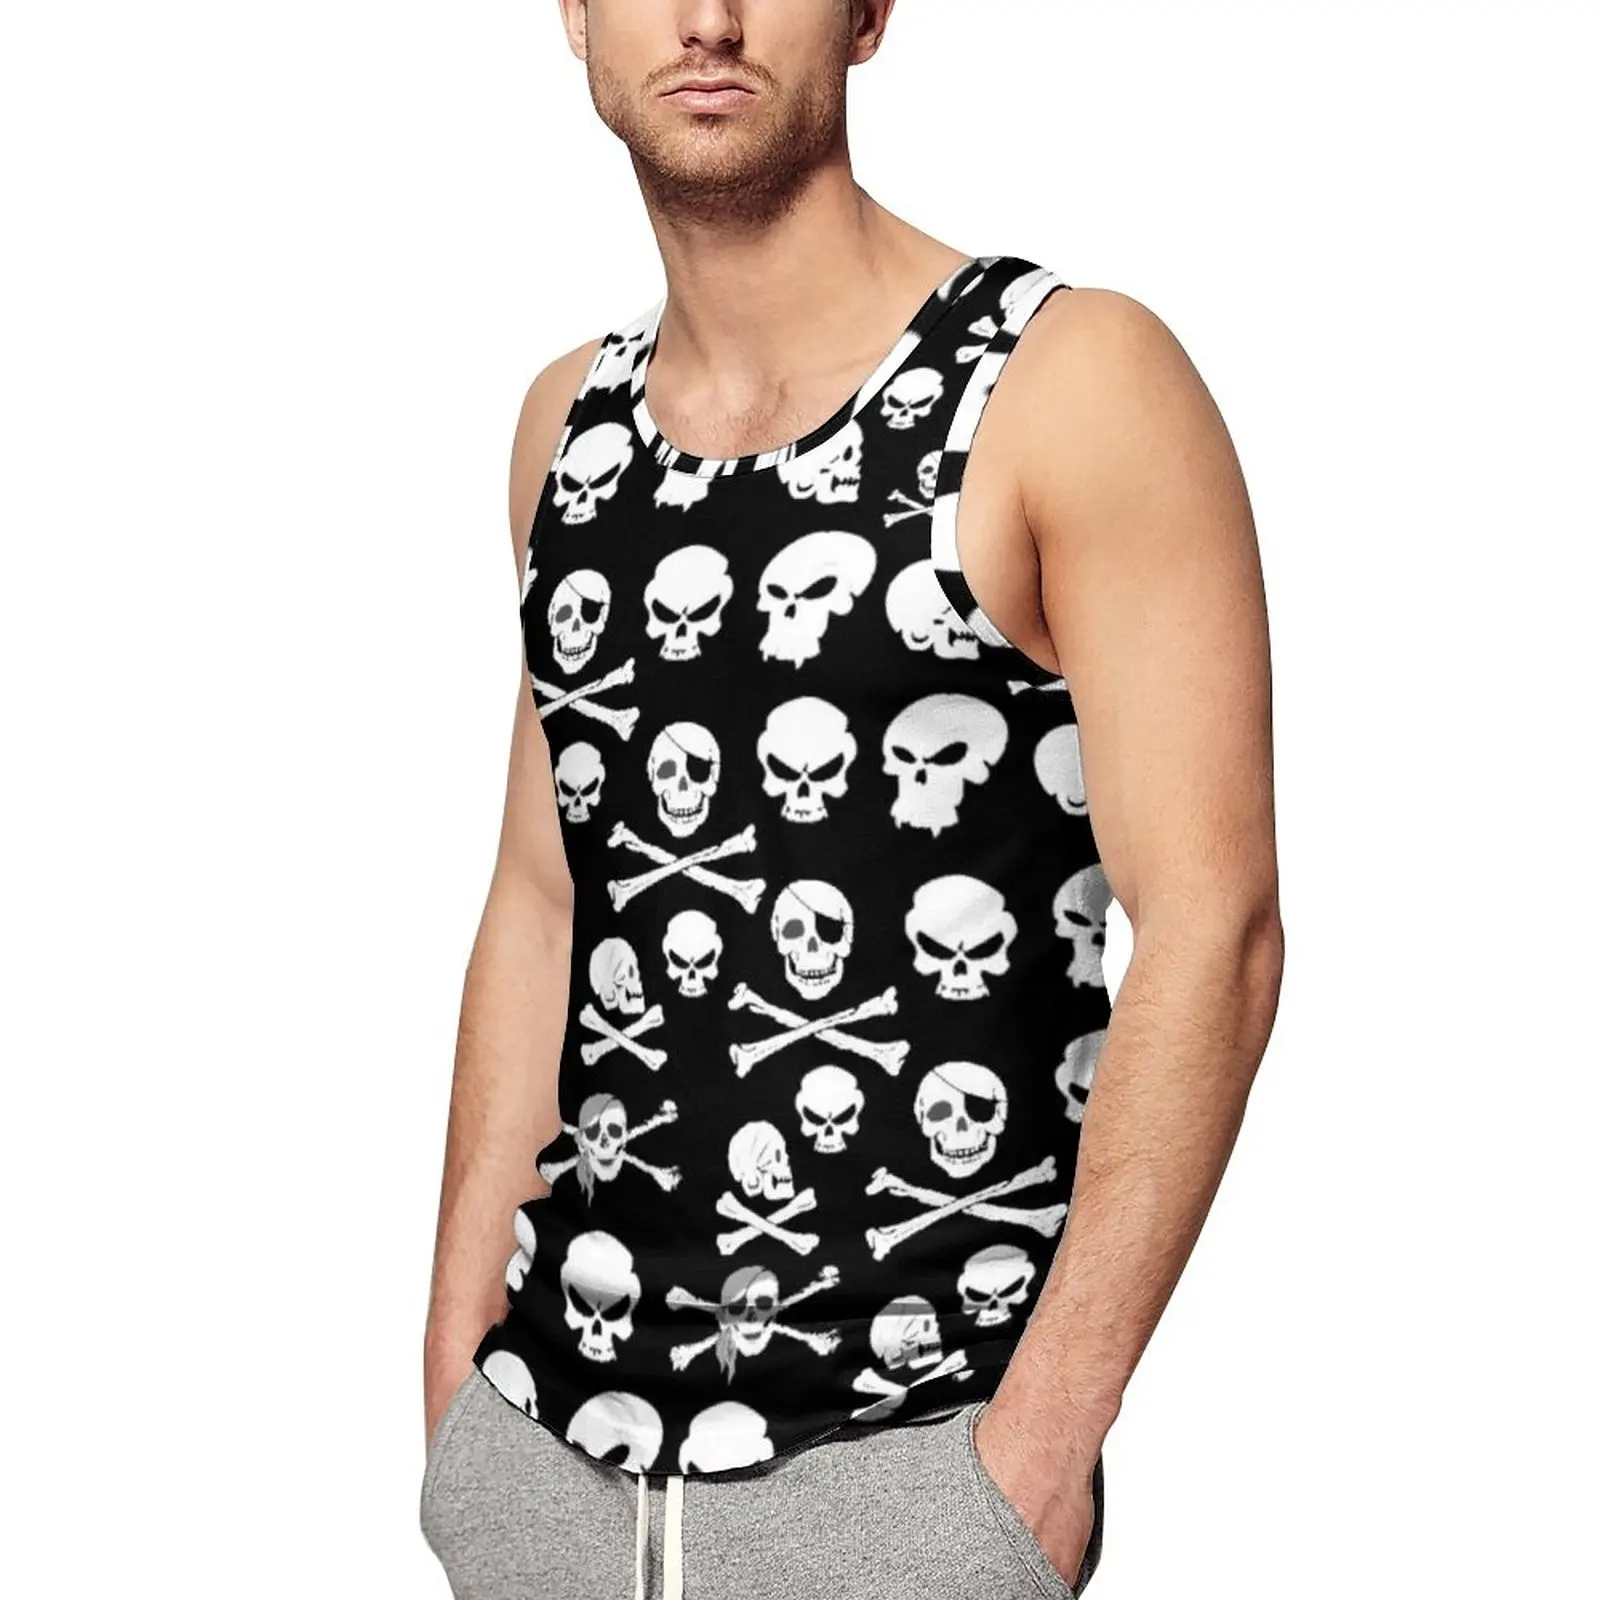 

White Skull Tank Top Male Pirate Cross Bones Skulls Tops Summer Design Bodybuilding Trendy Oversize Sleeveless Shirts